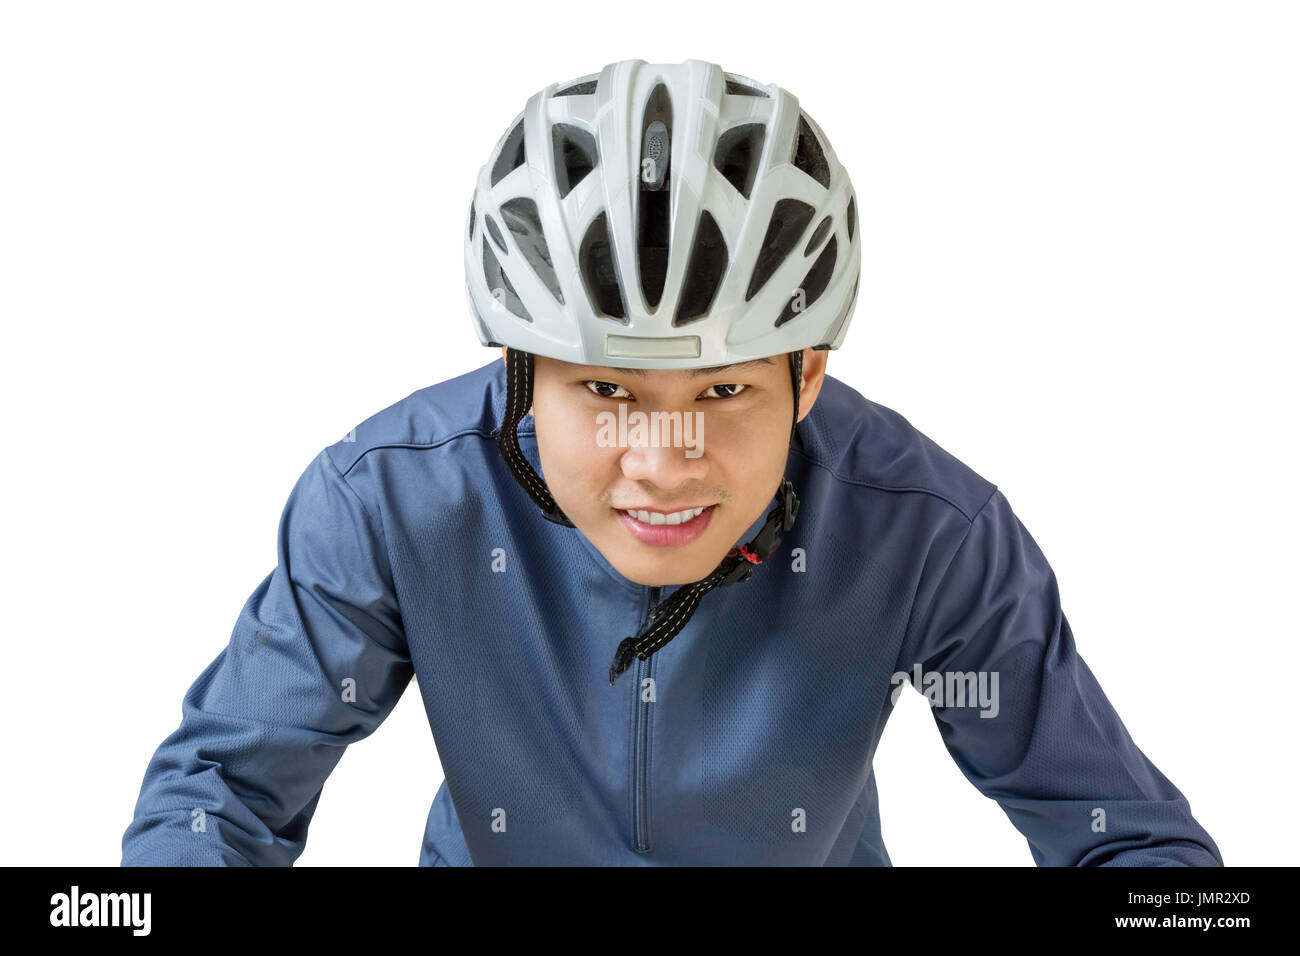 Ritratto di un uomo asiatico ciclista con casco e abbigliamento sportivo. Isolato su sfondo bianco con tracciato di ritaglio Foto Stock